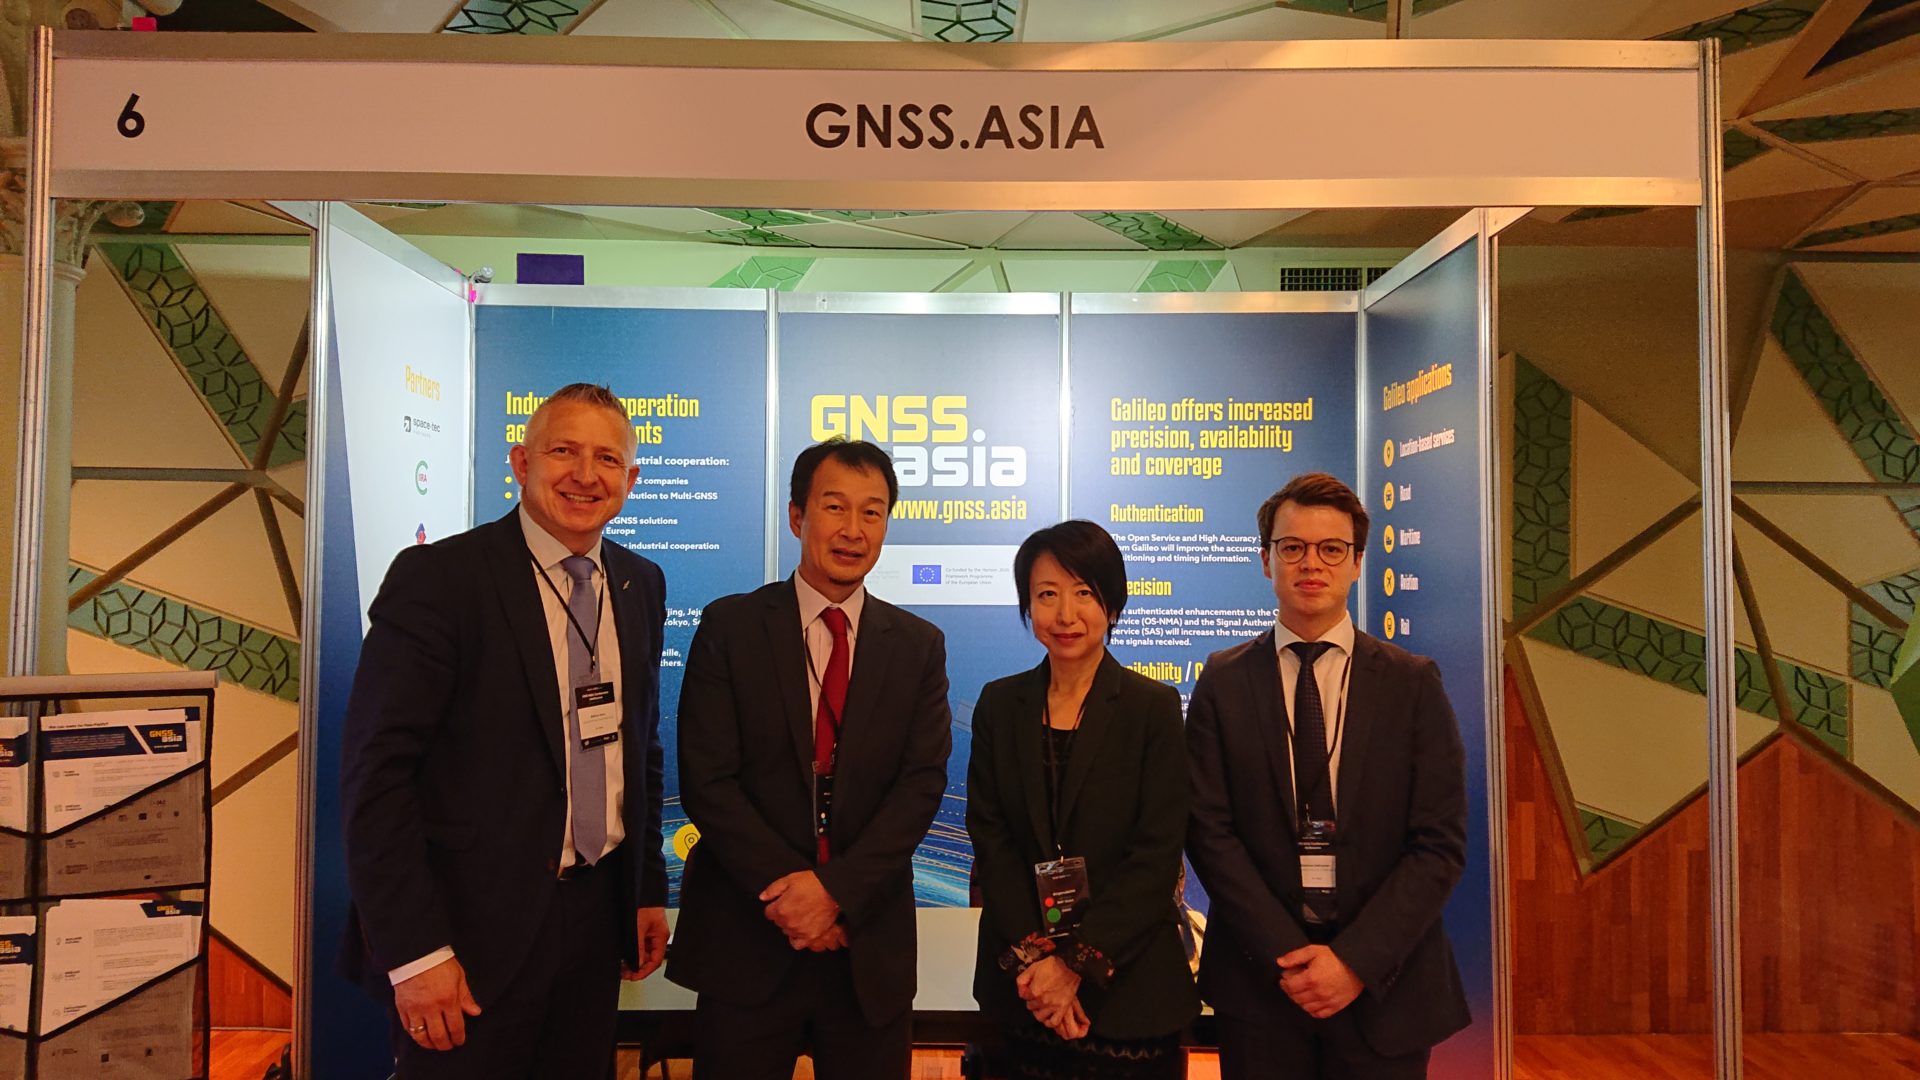 GNSS.asia 成功參與在澳洲舉行的MGA大會